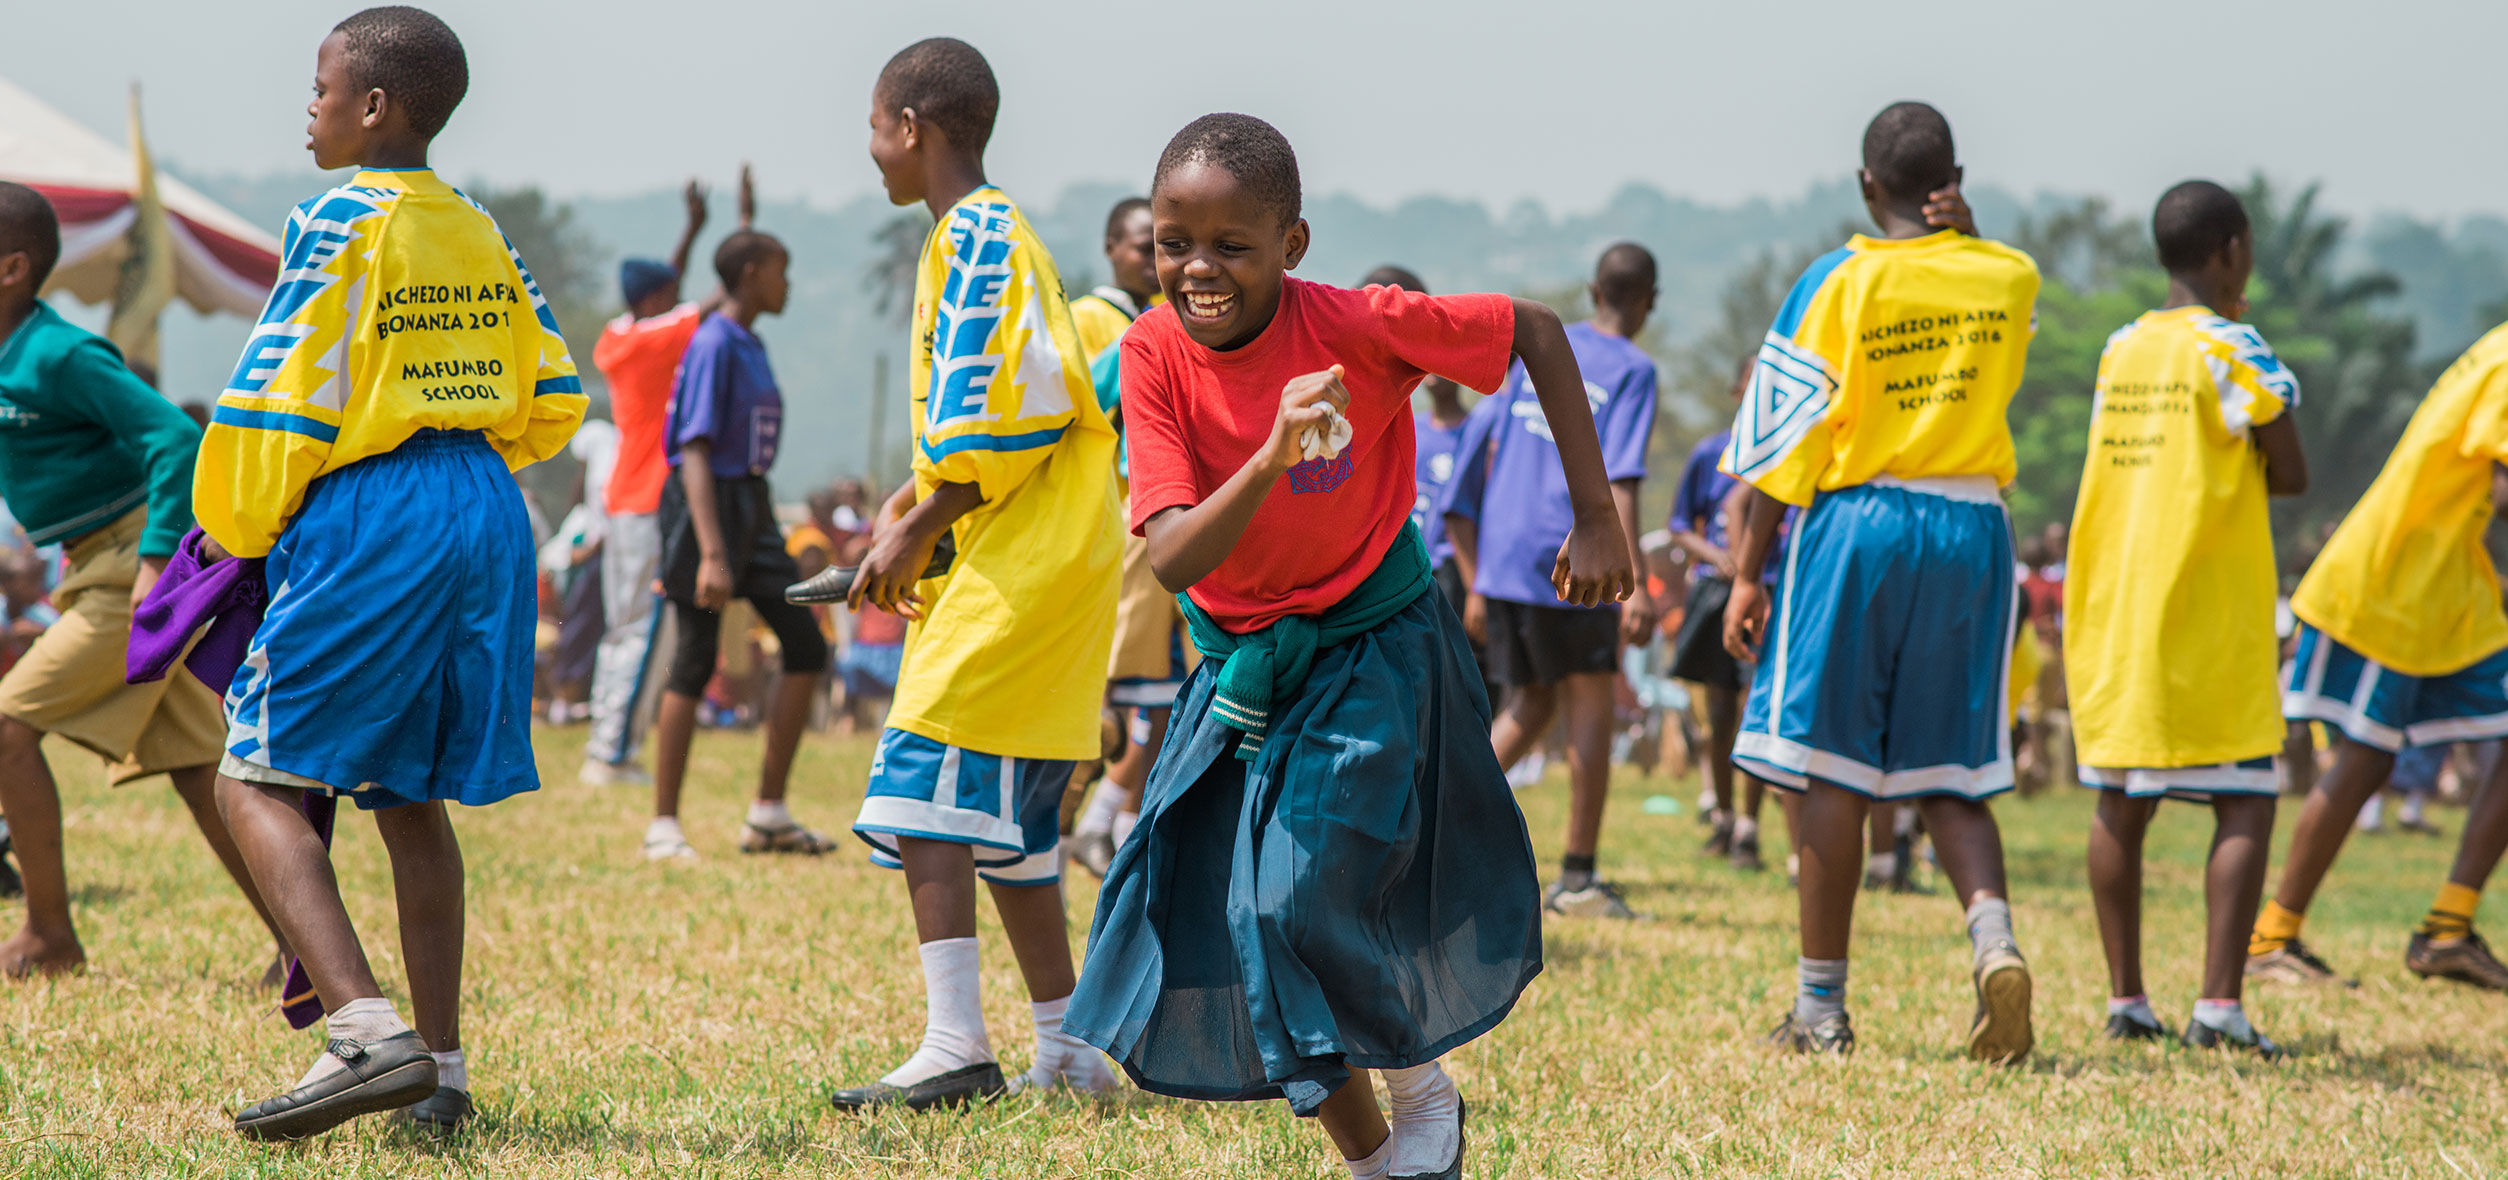 Afrikanische Mädchen und Jungen spielen Fussball (Foto)